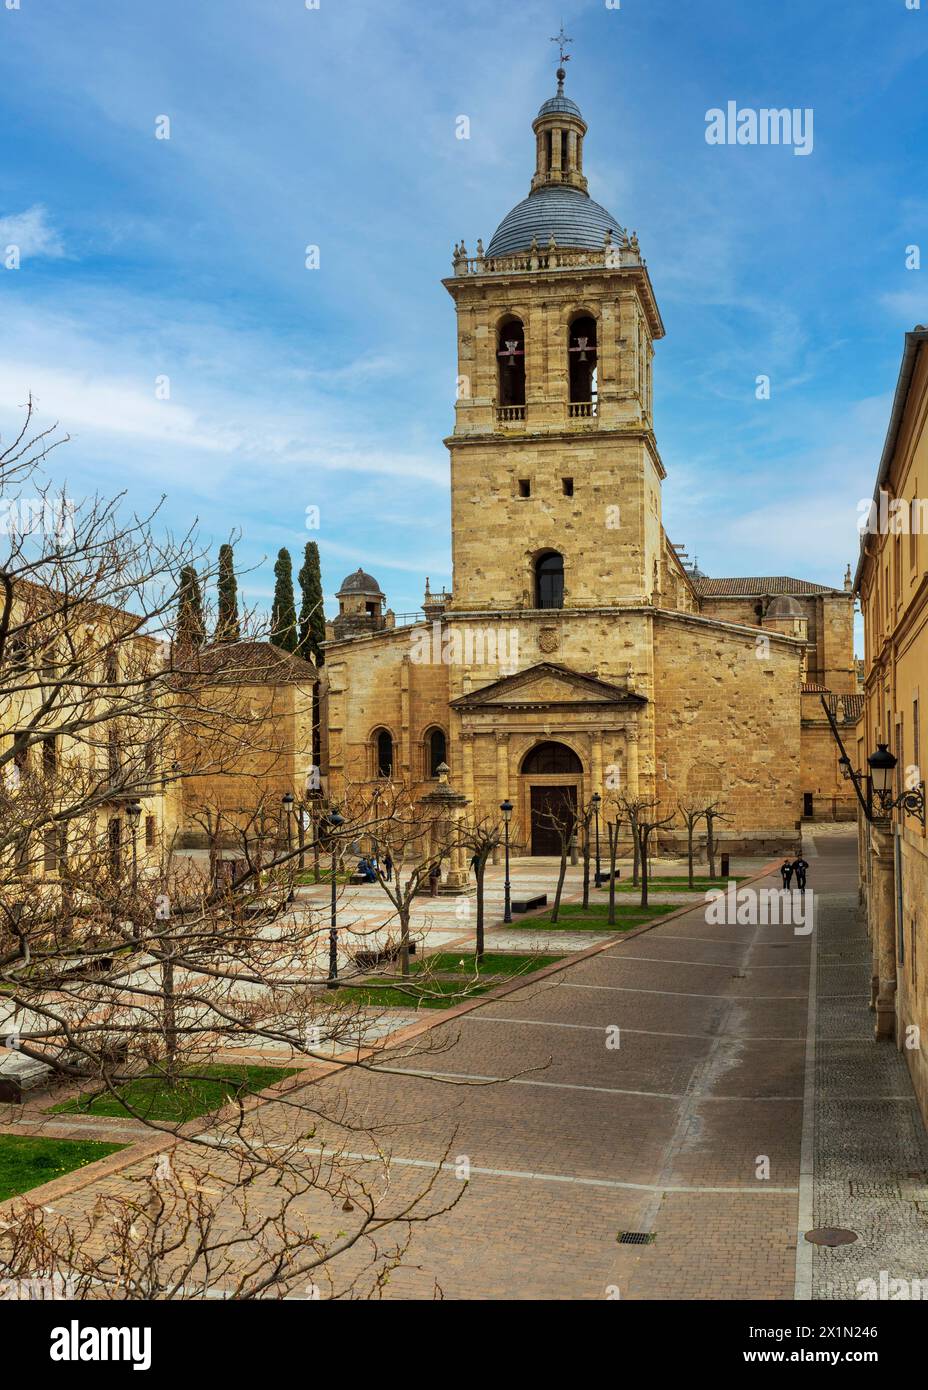 Cathedral of Ciudad Rodrigo, Salamanca, Spain Stock Photo